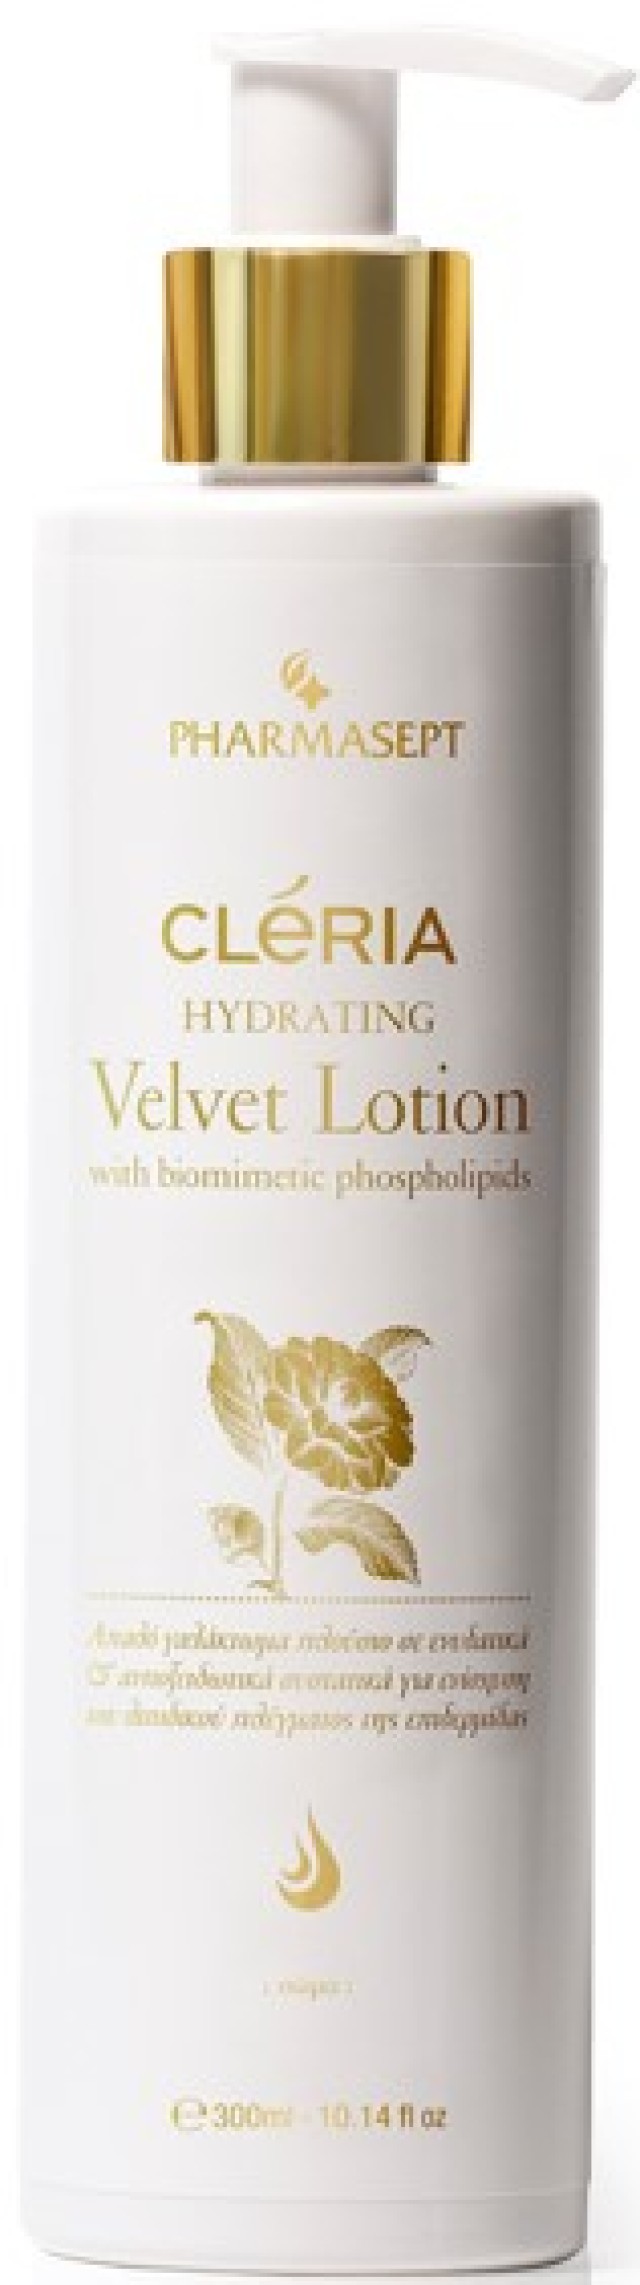 Pharmasept Cleria Hydrating Velvet Lotion 300ml